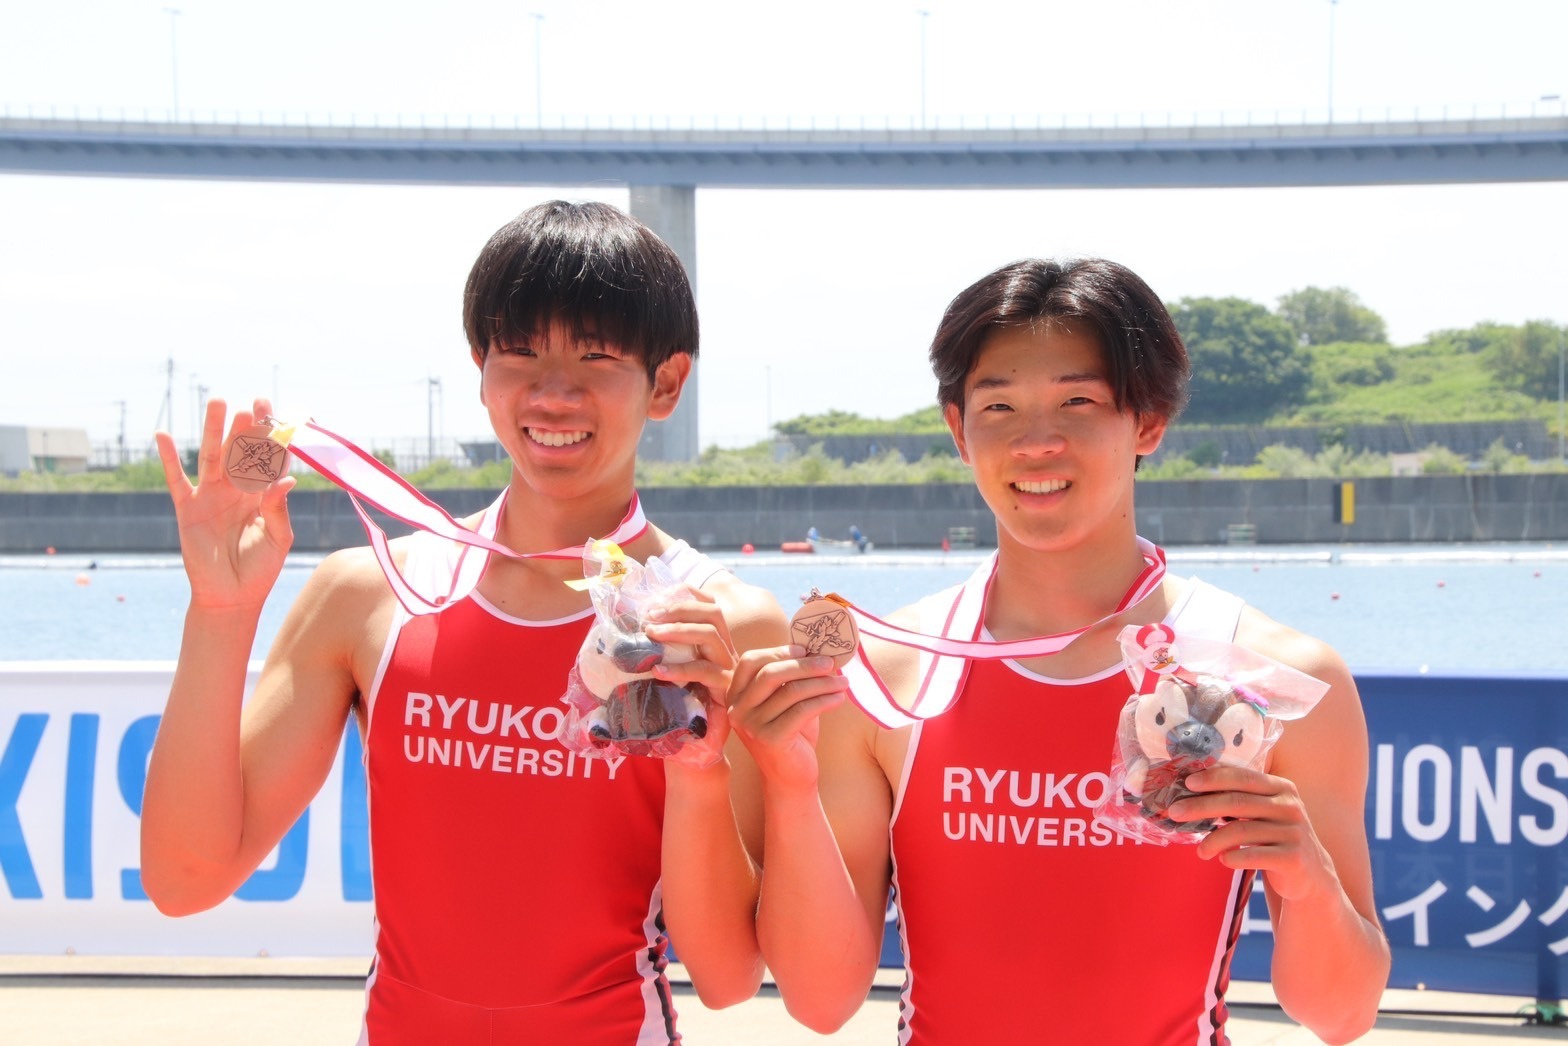 端艇部 全日本ローイング選手権大会 男子軽量級ダブルスカルで3位入賞